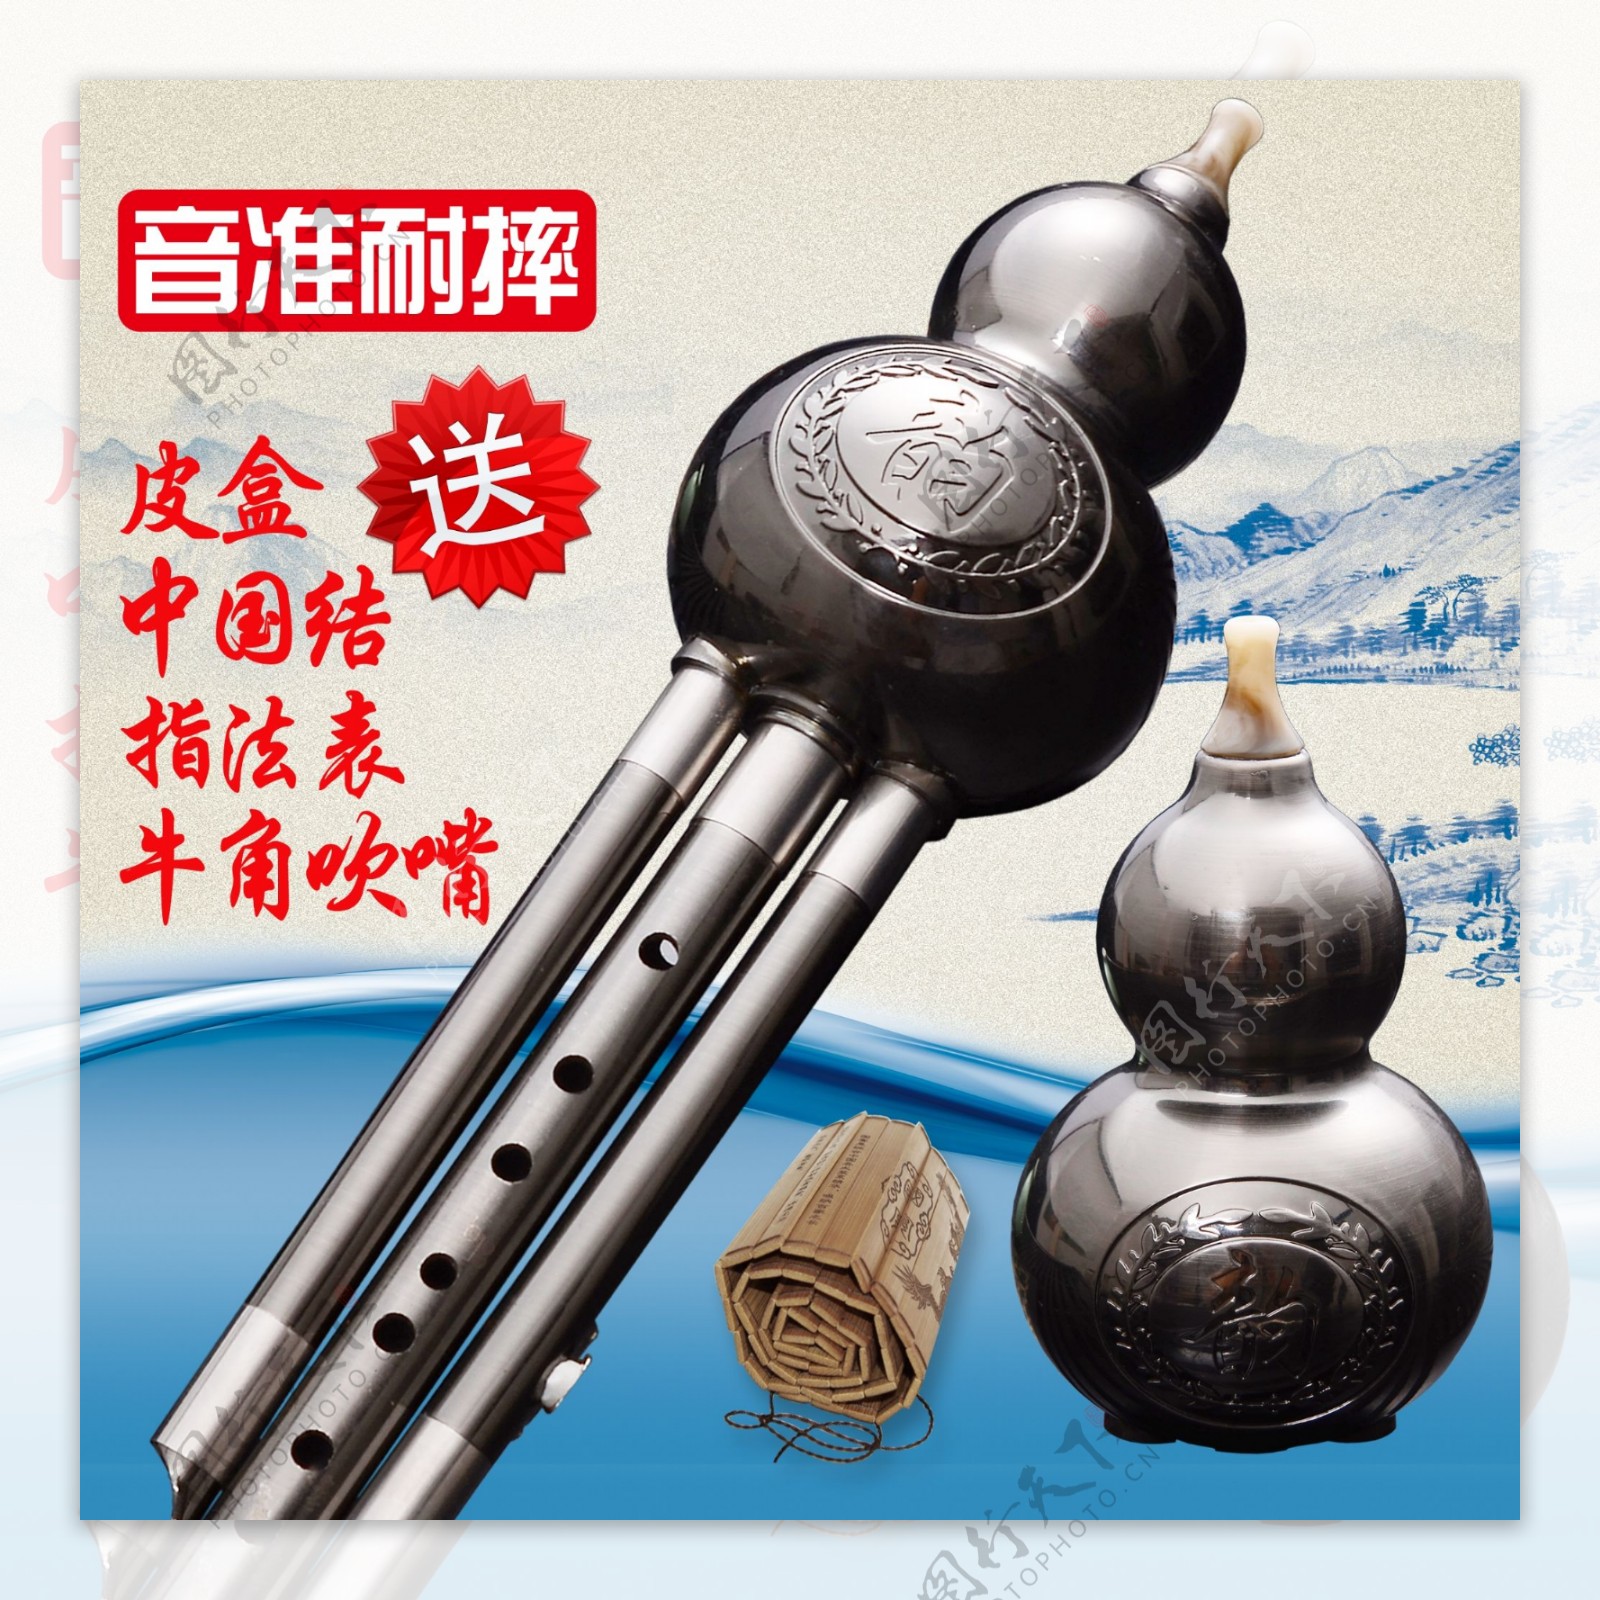 中国风葫芦丝淘宝双11活动海报主图